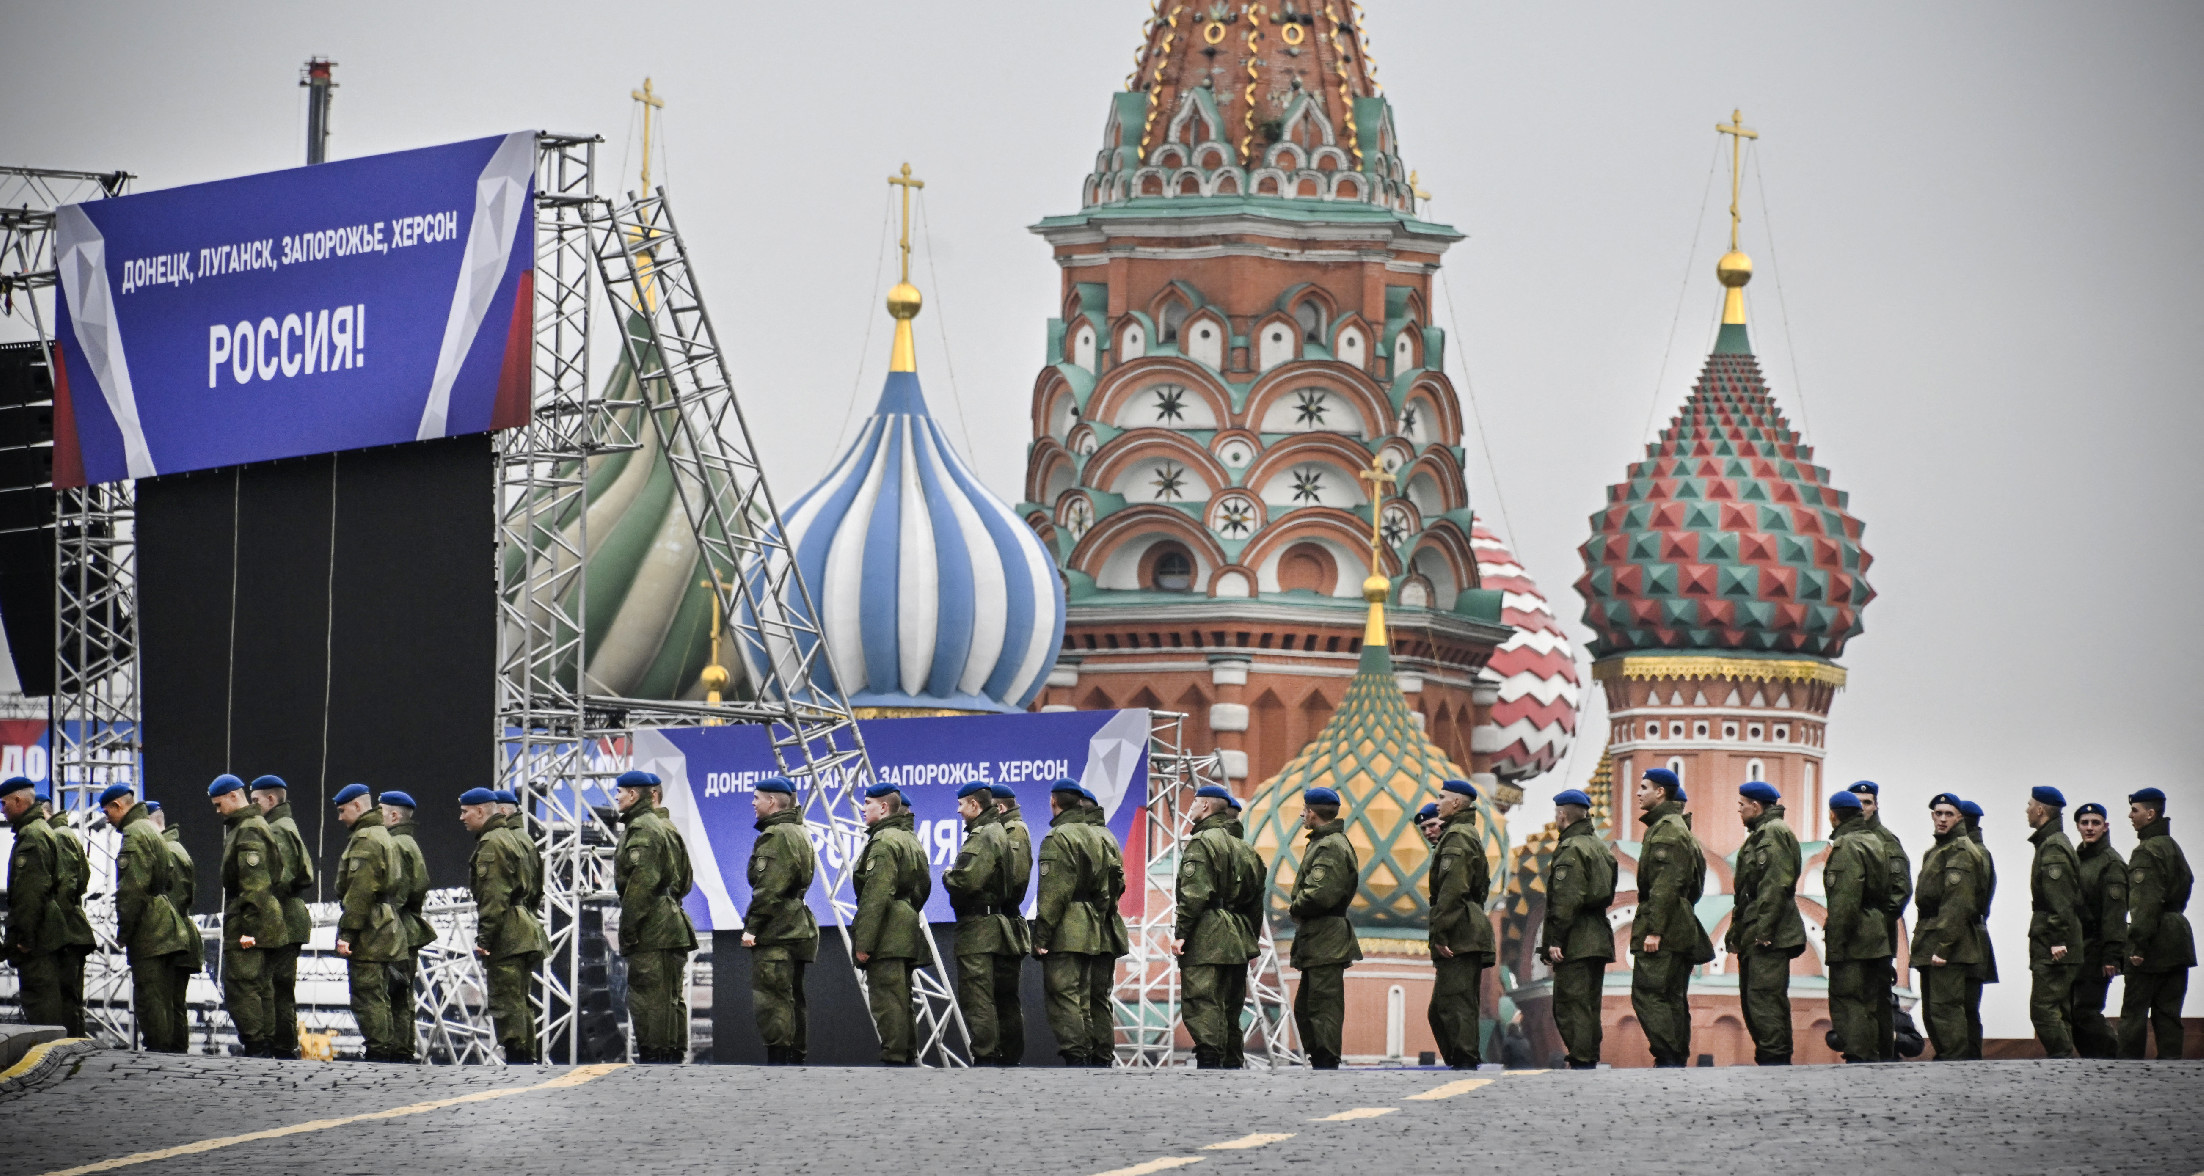 Putyin: Ukrajna hagyjon fel minden katonai akcióval és háborúval, amelyet ők kezdtek el 2014-ben